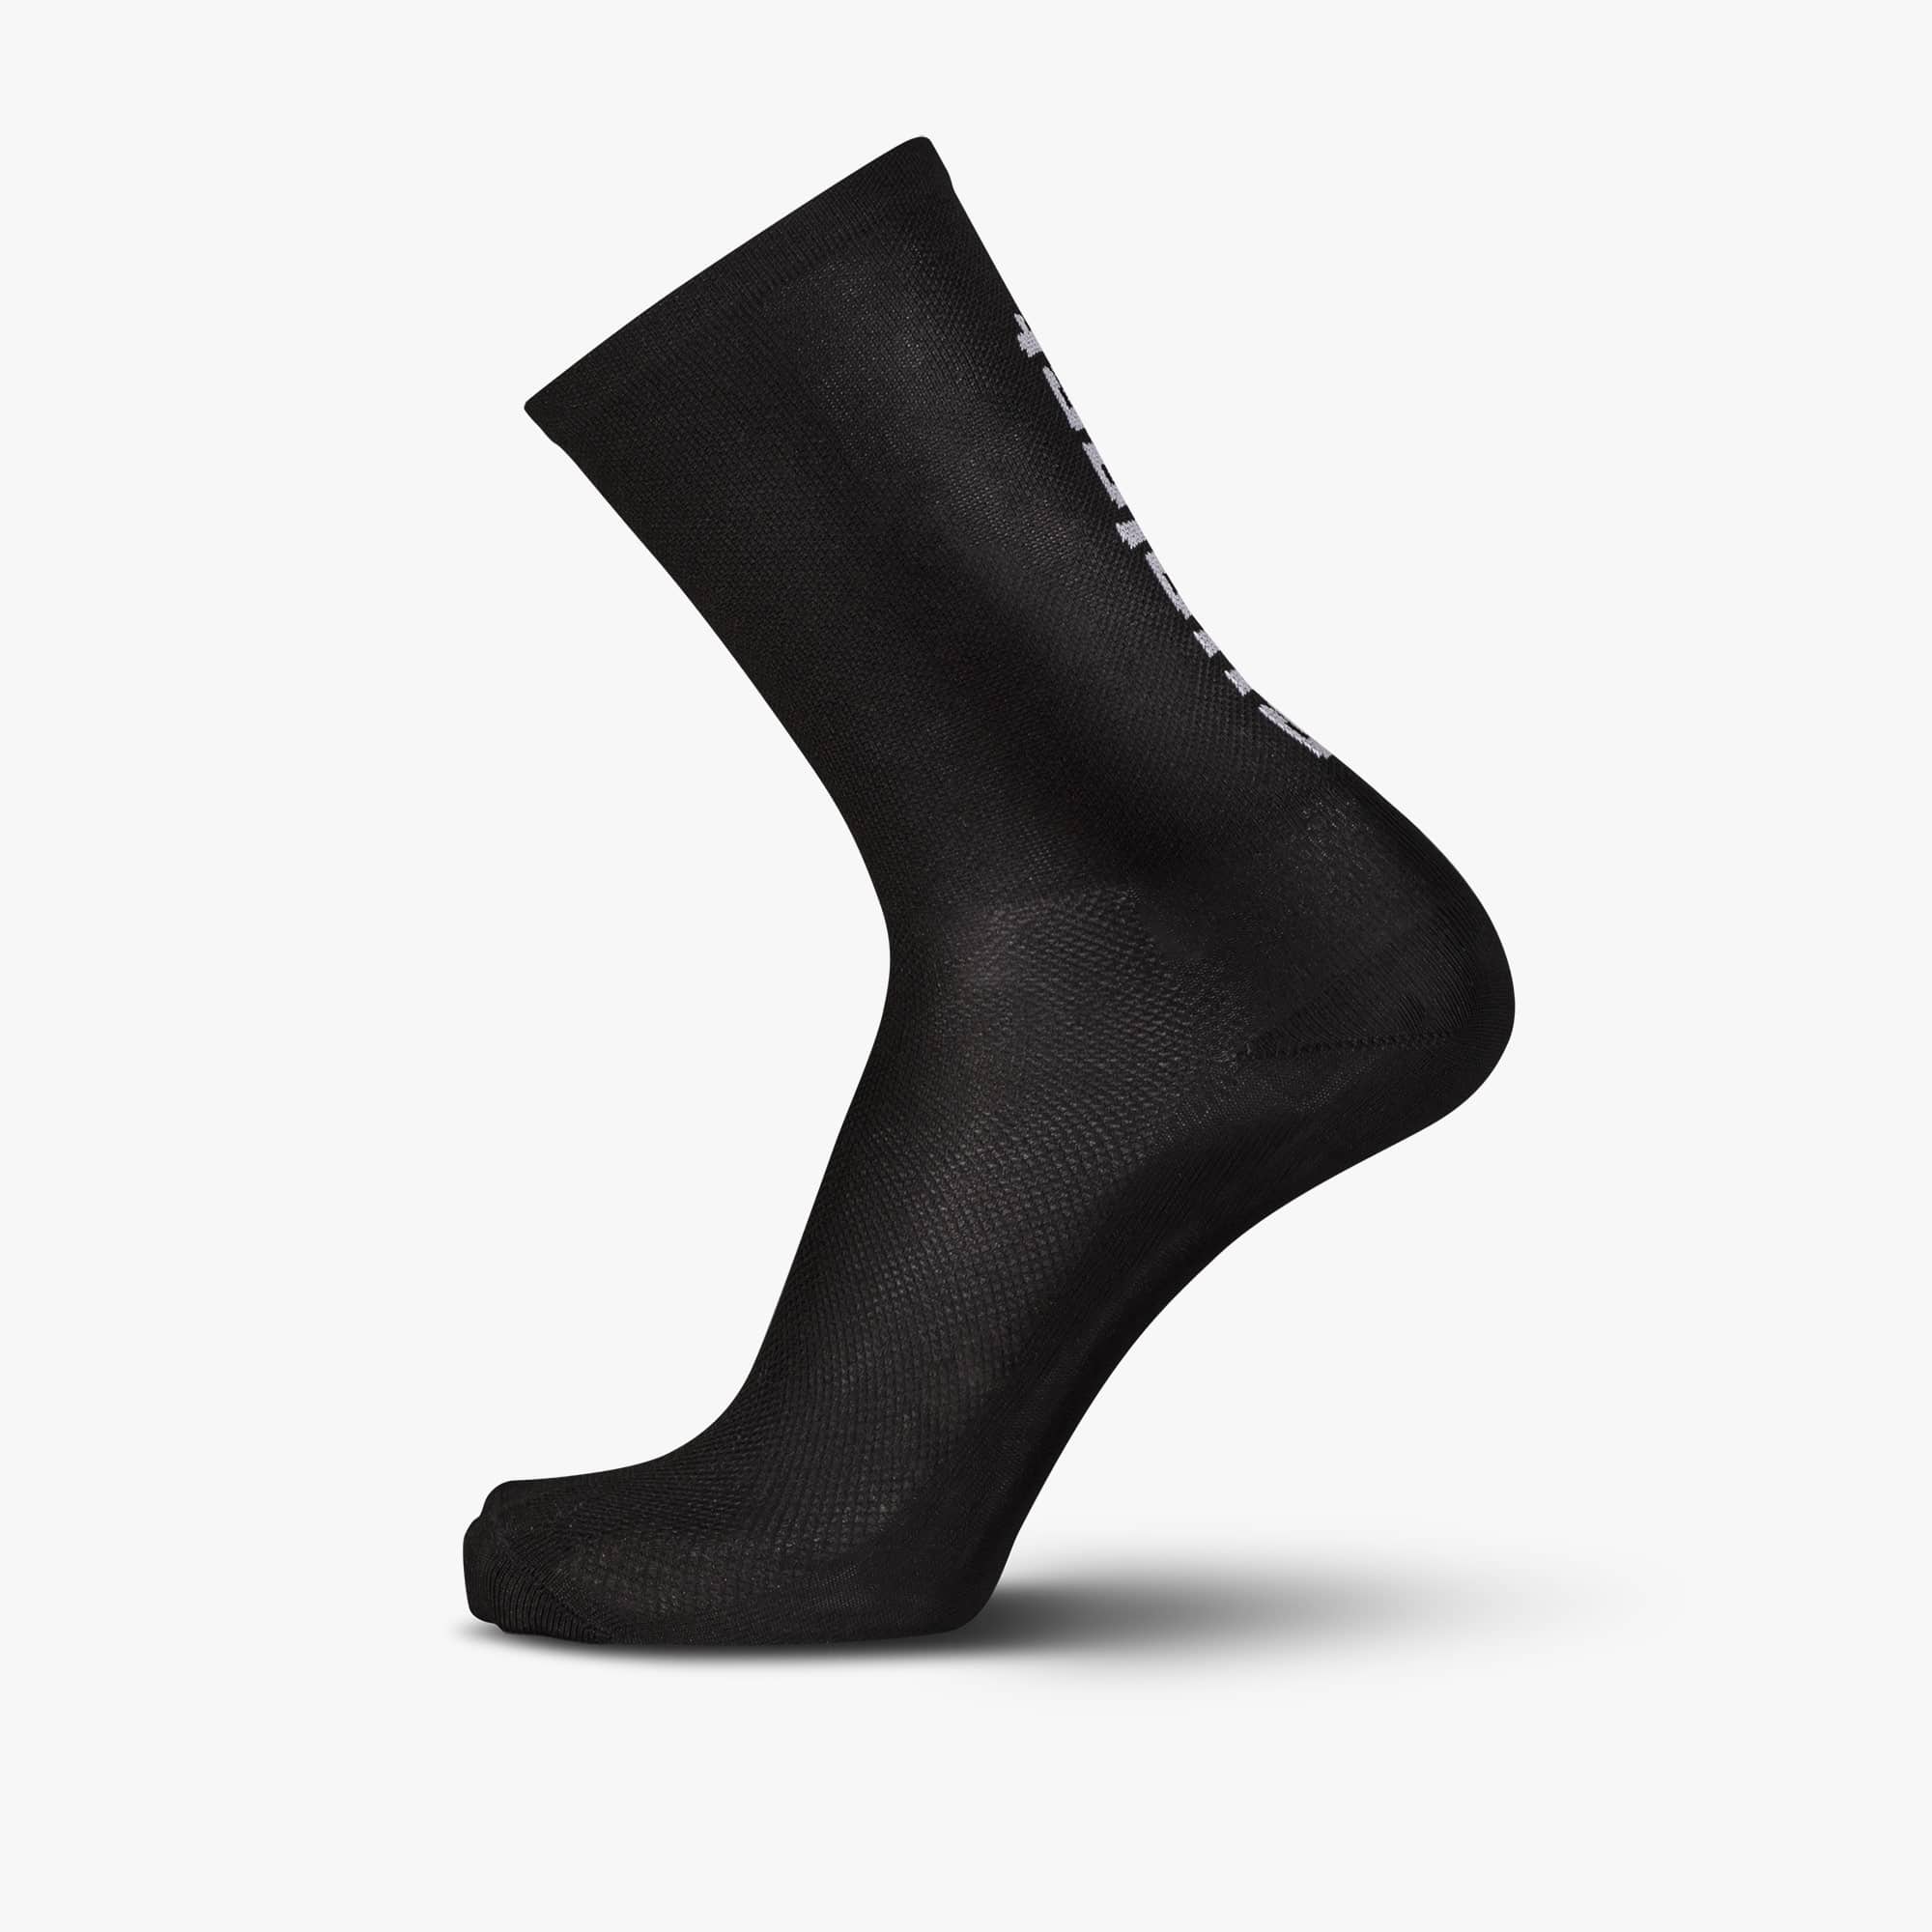 SUPLEST x FINGERSCROSSED Sock - Black/White